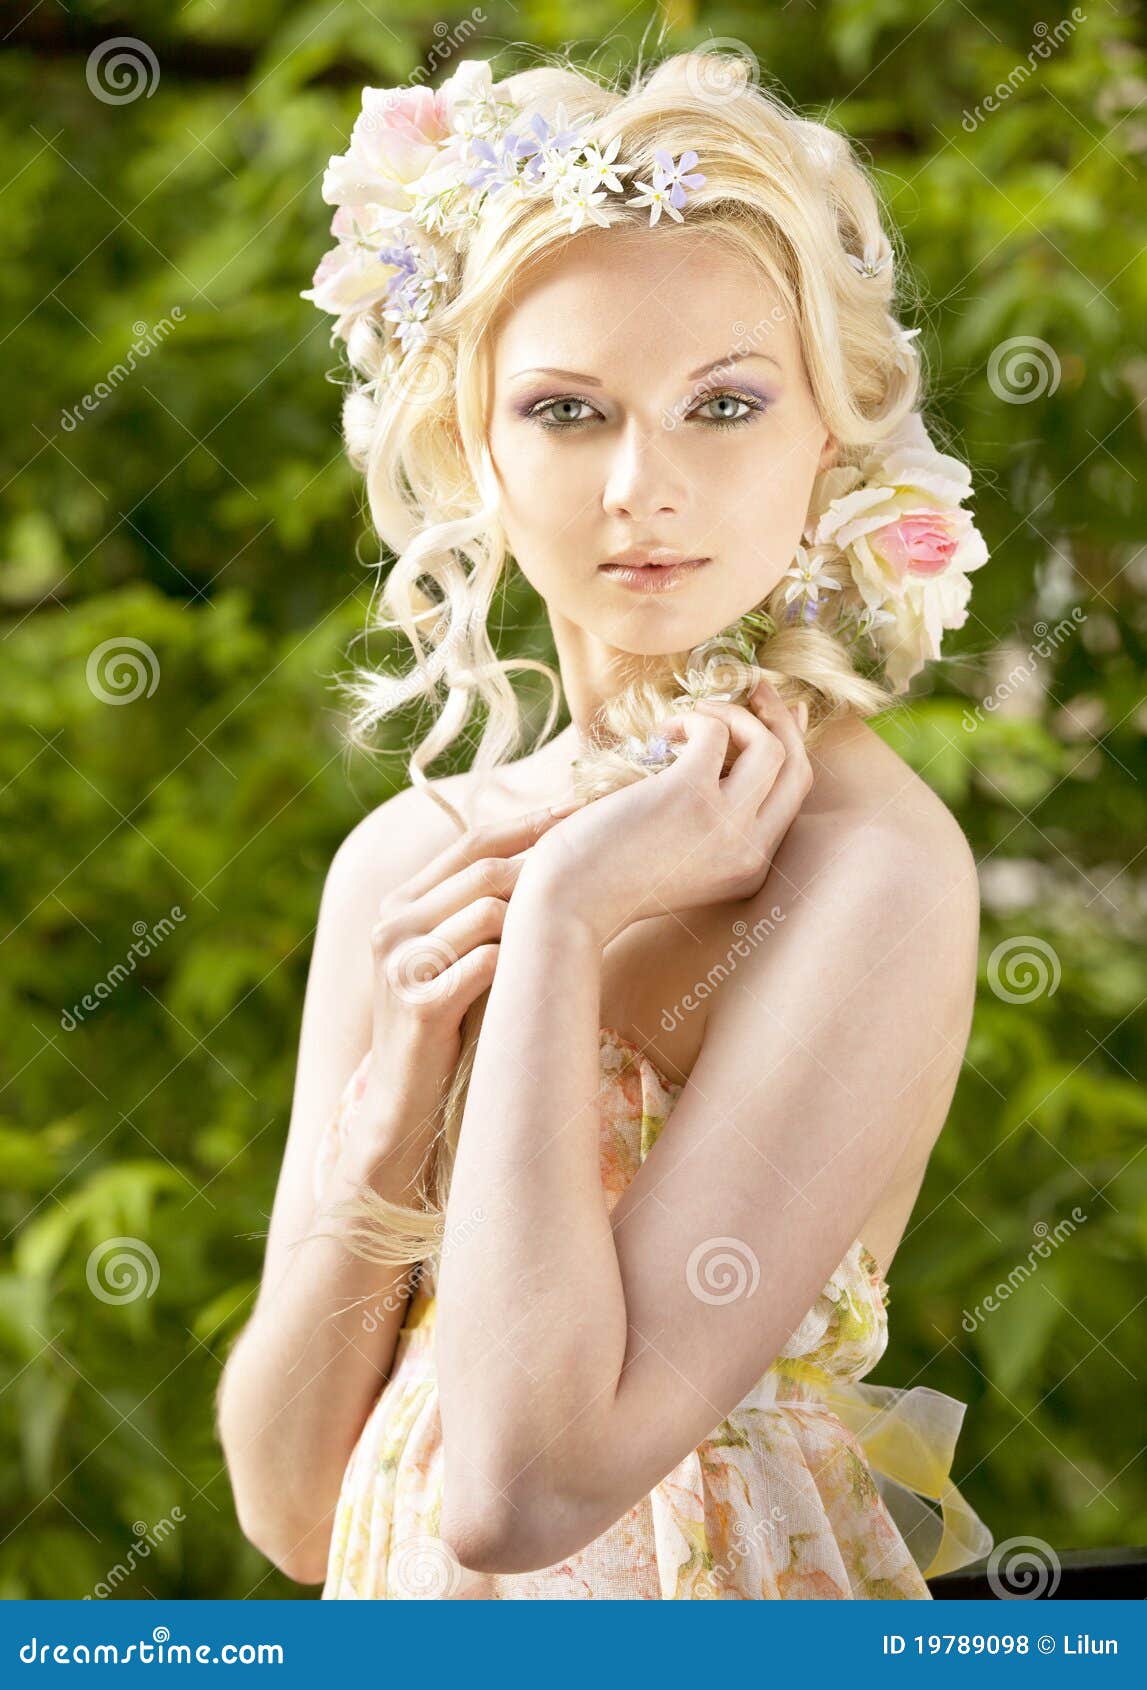 Petite Fille 5 Ans De Blonde Sentant Une Fleur Pendant L'été Photo stock -  Image du cheveu, jour: 91030876